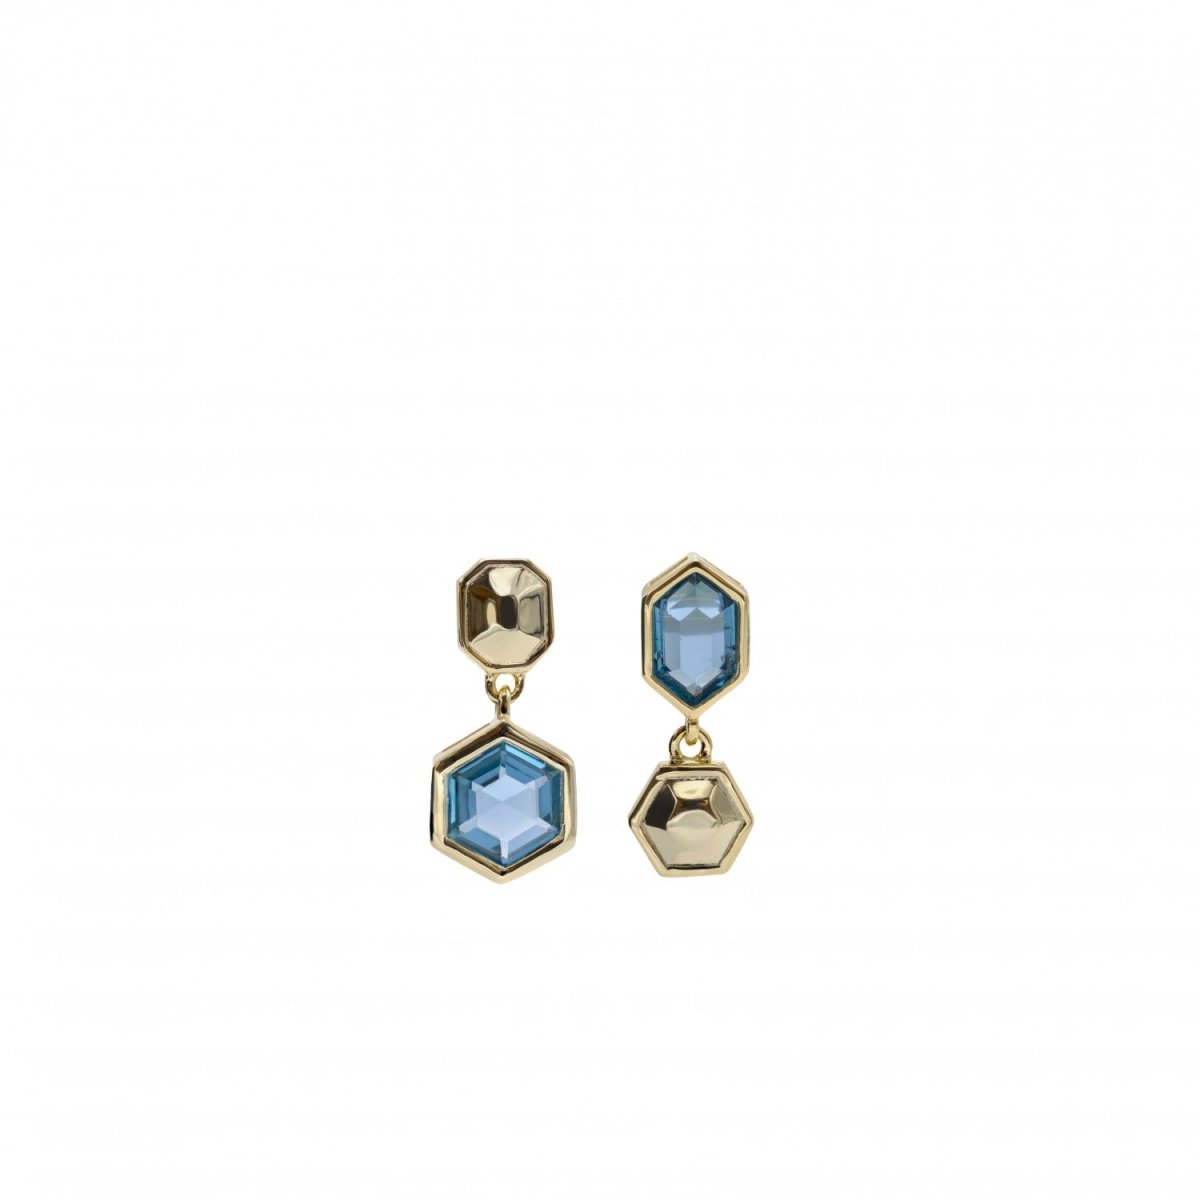 Pendiente · Pendientes con colgantes diseño hexagonal y gema azul